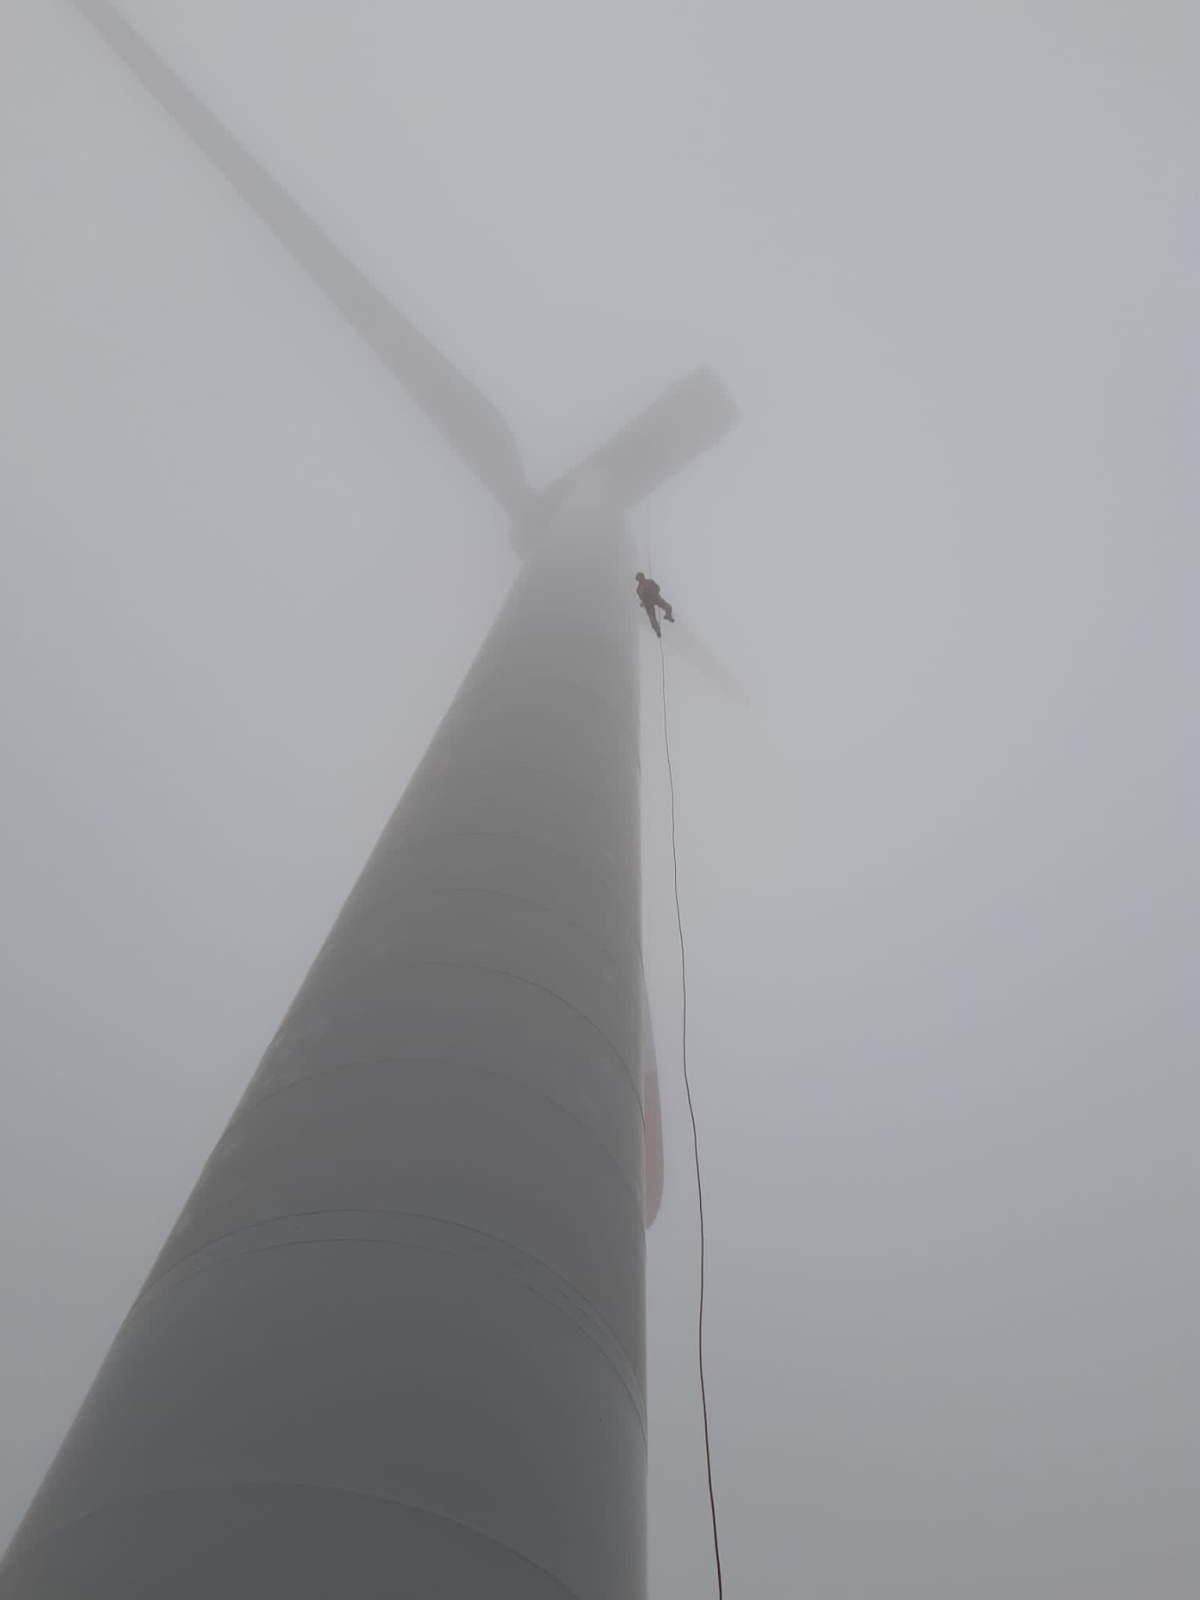 014-Výcvik lezců větrná elektrárna Pchery (2).jpeg